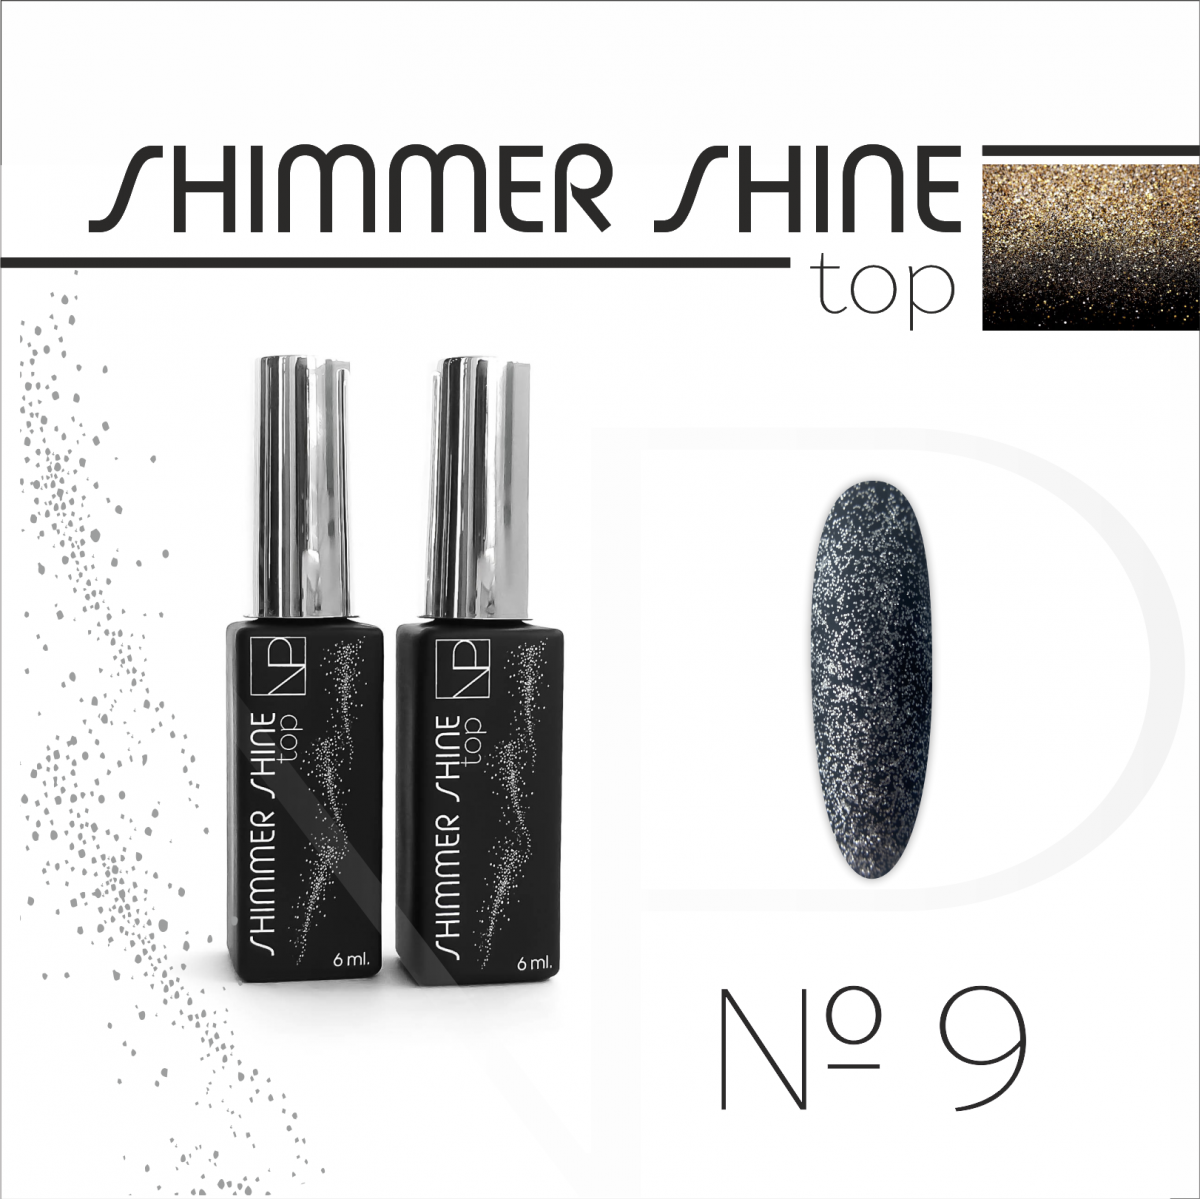 Топ для гель-лака Top Shimmer Shine NARTIST №09, 6 мл